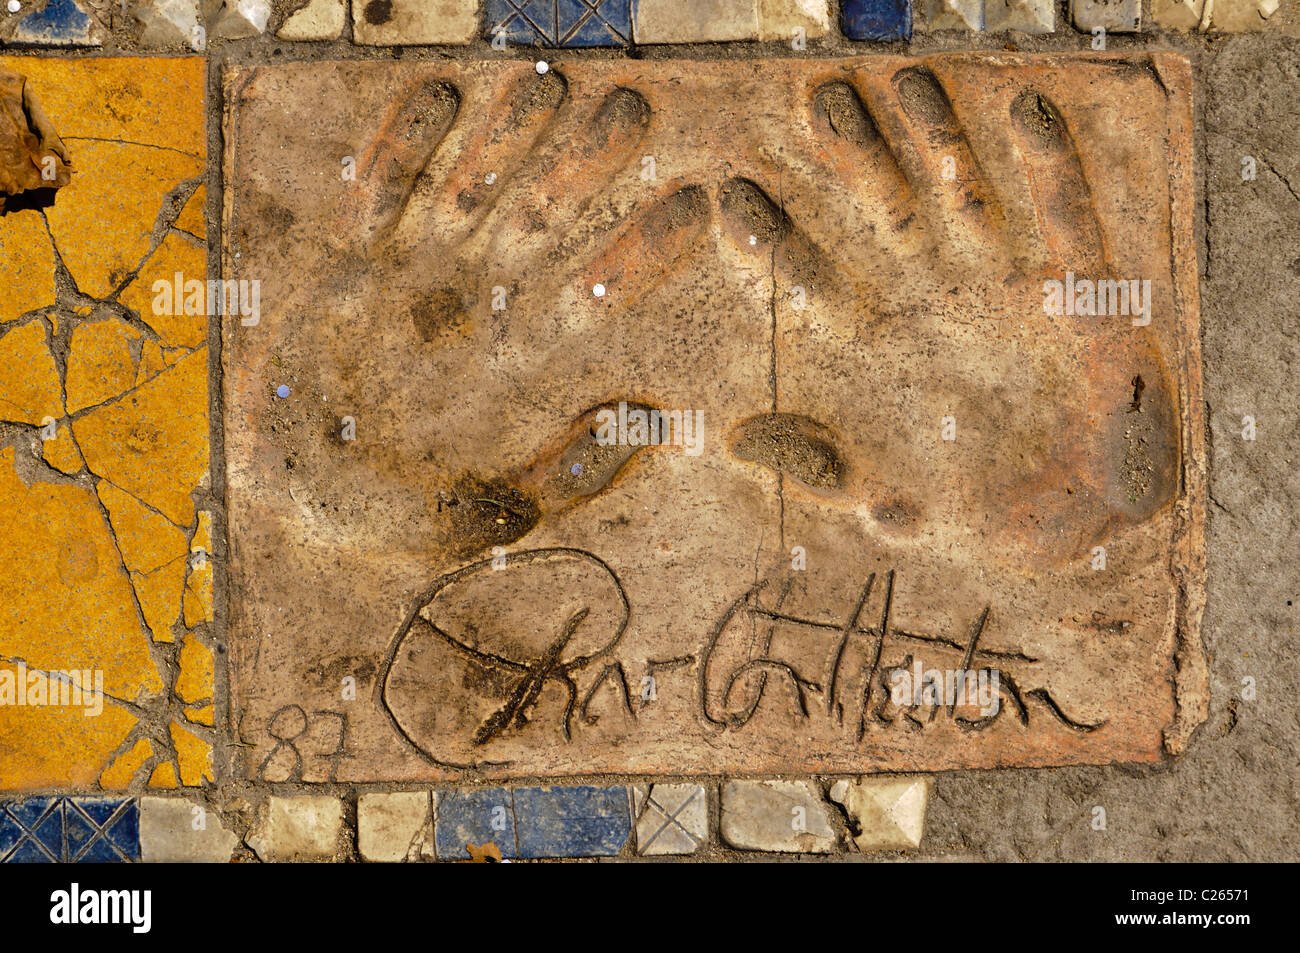 Handprint argile de l'acteur Charlton Heston à l'extérieur du Palais des Festivals et des Congrès, Cannes Banque D'Images